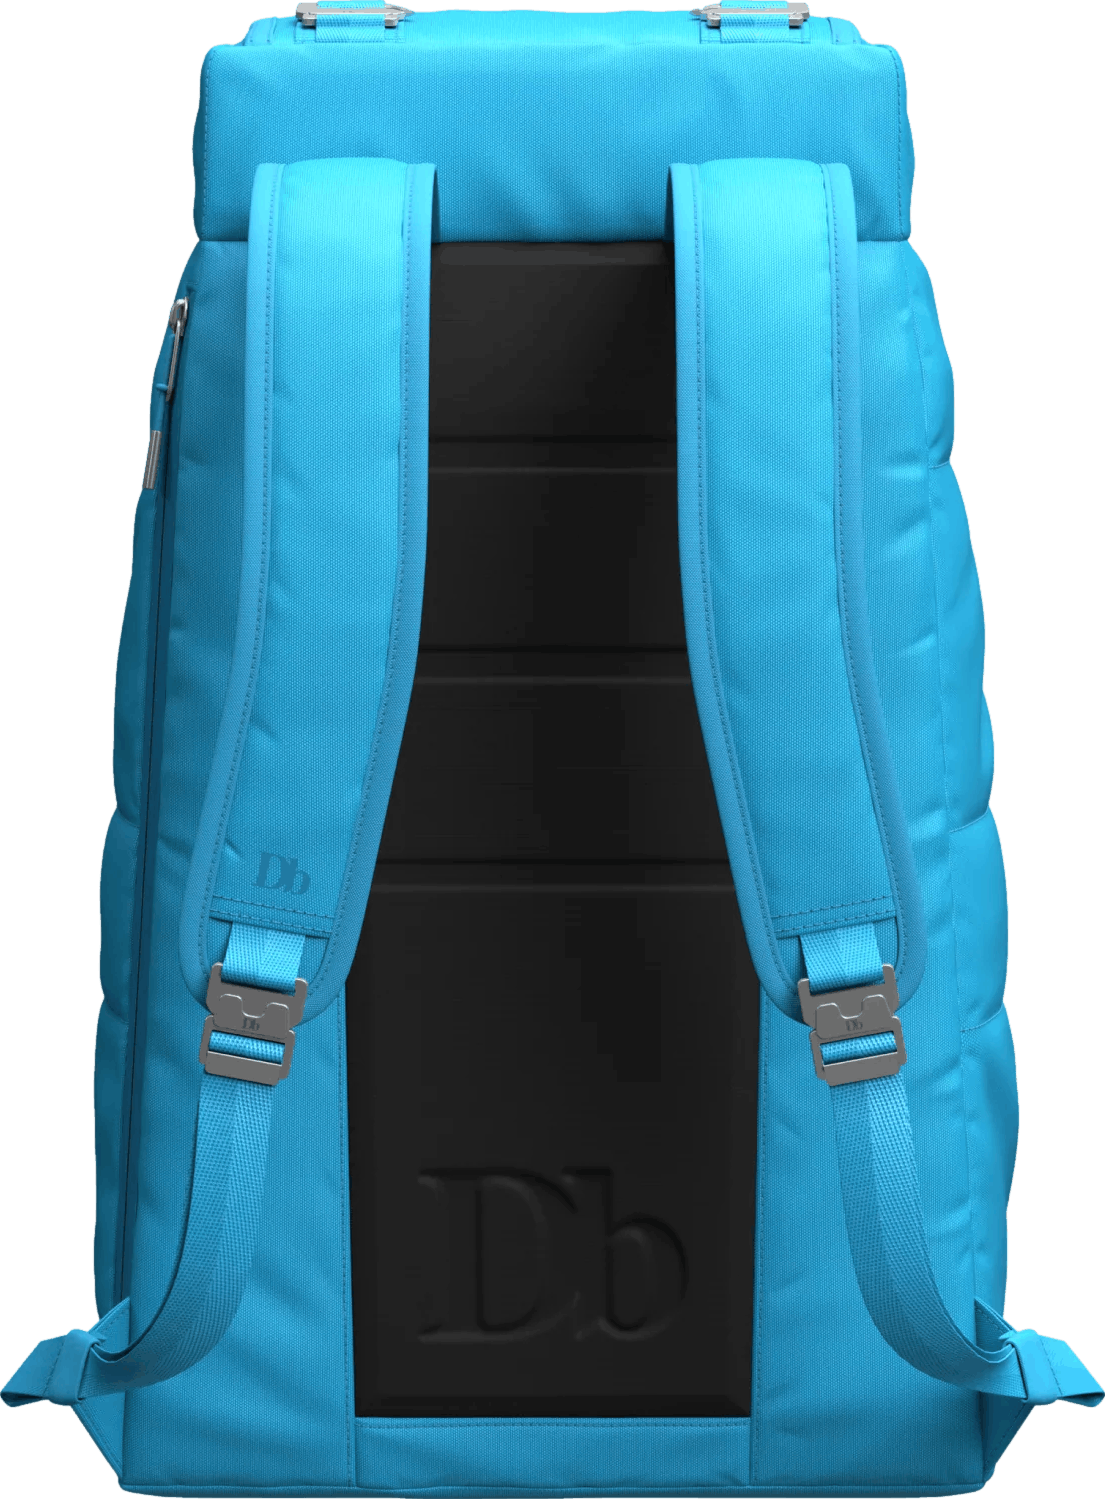 Db The Strøm 20L Backpack